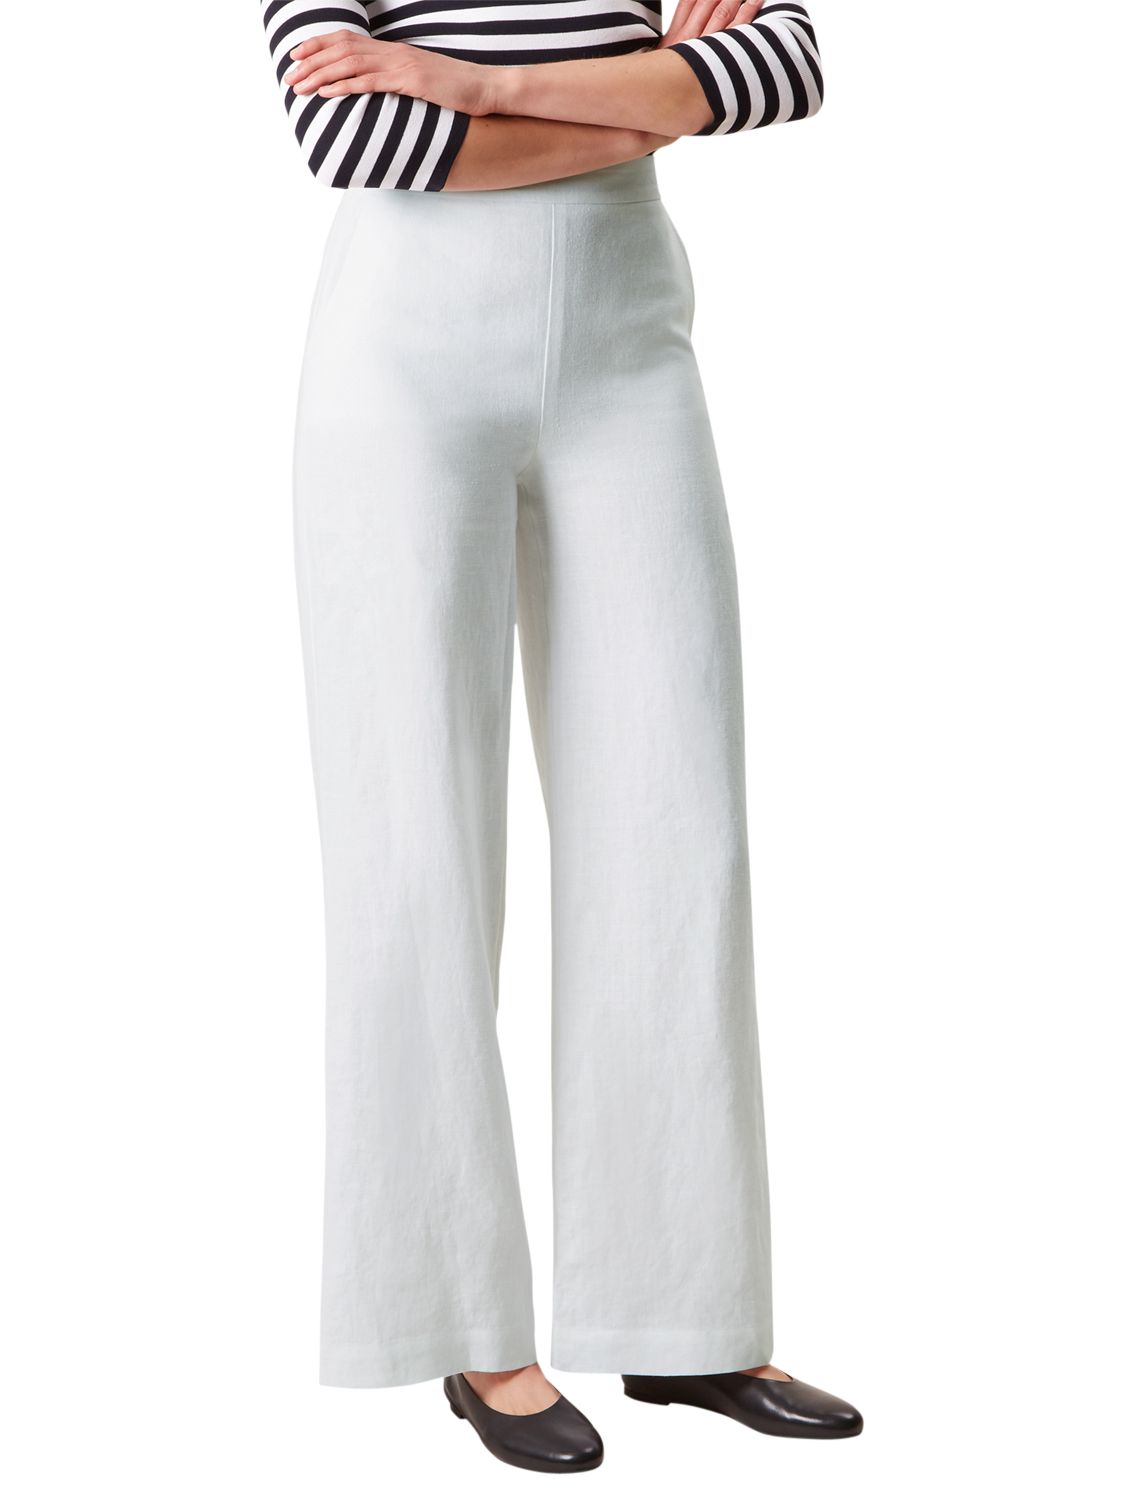 Hobbs Anise Linen Trousers, White, 12